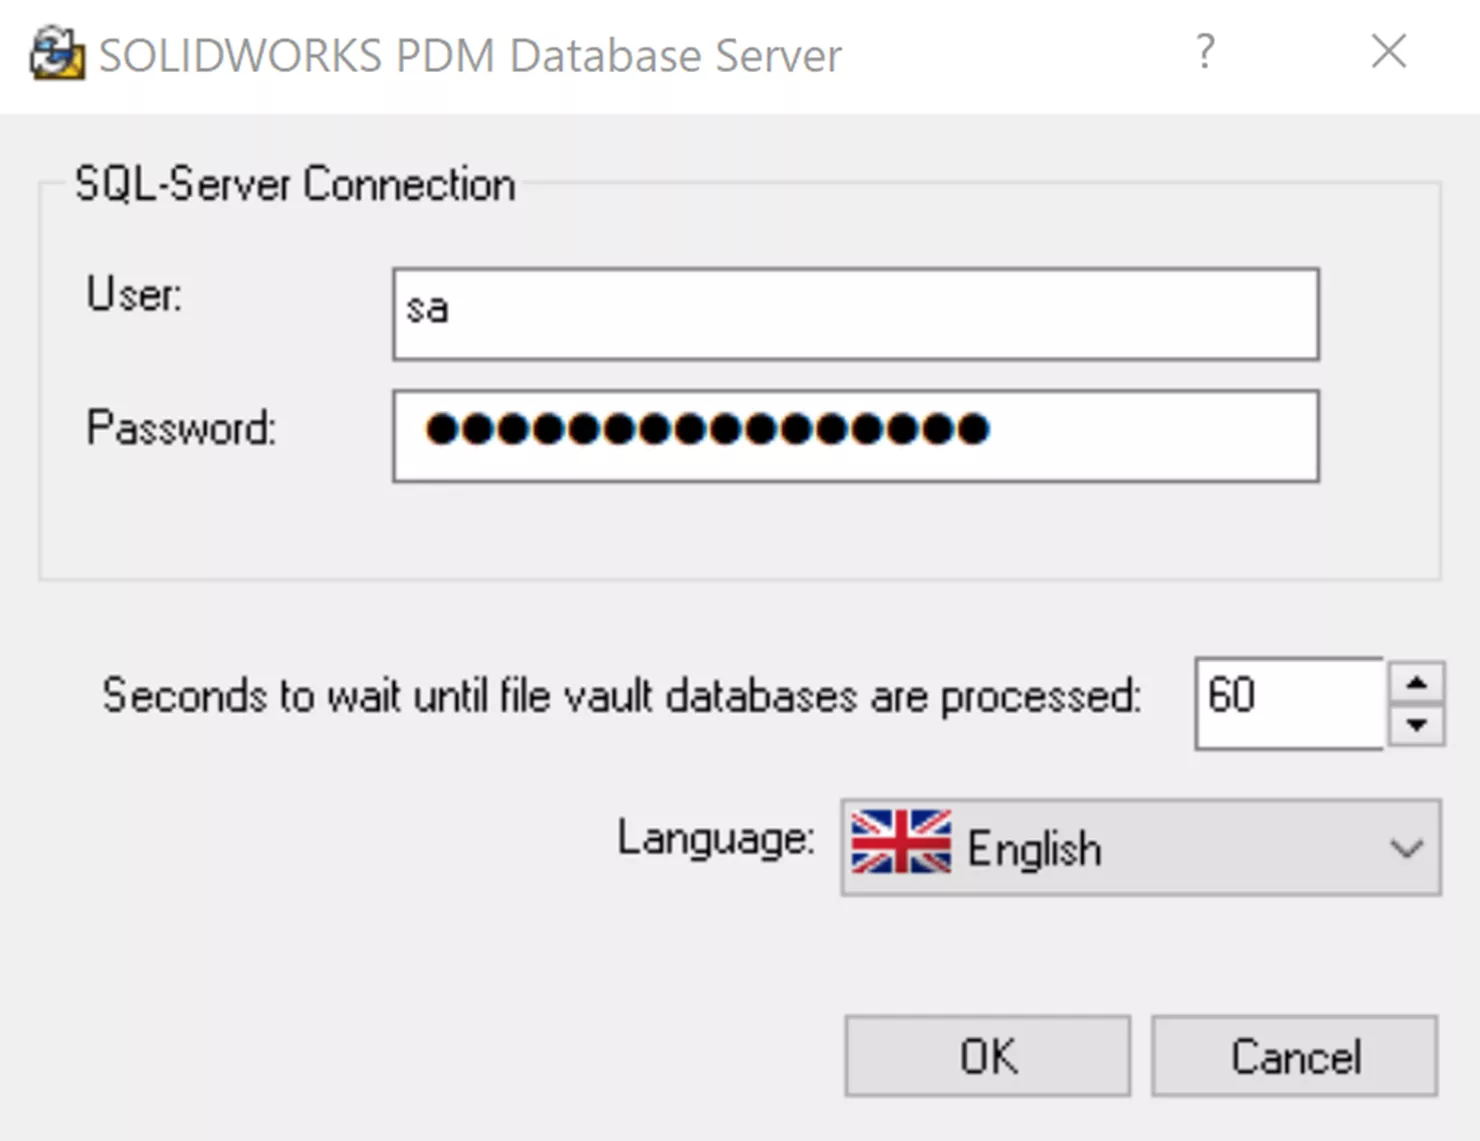 SOLIDWORKS PDM Database Server Configuration Tool